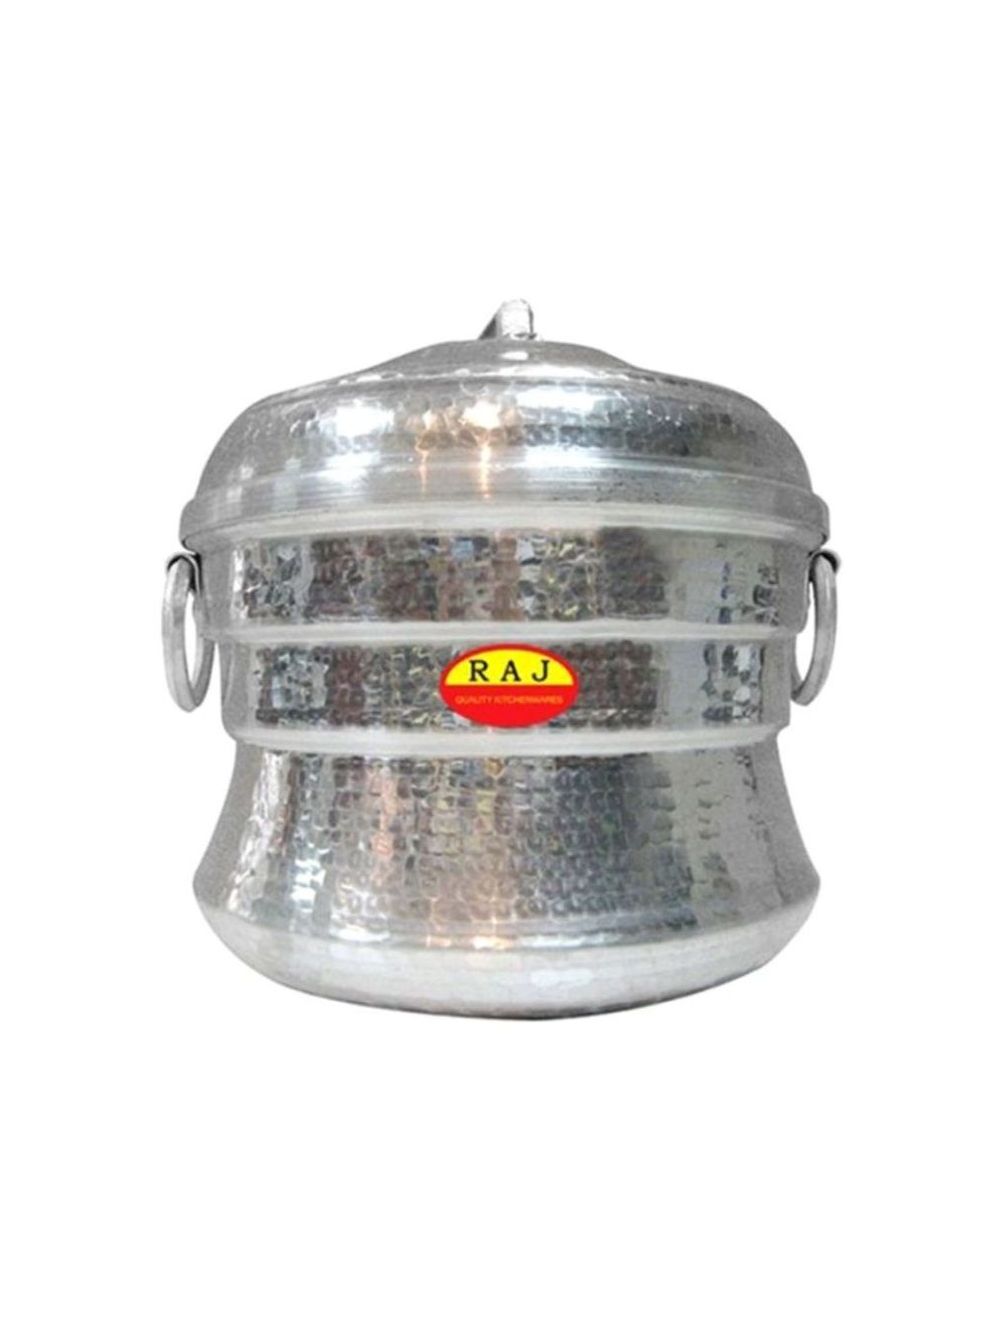 Raj Aluminium Idli Indian Steamer Pot, Silver, 47 Idli